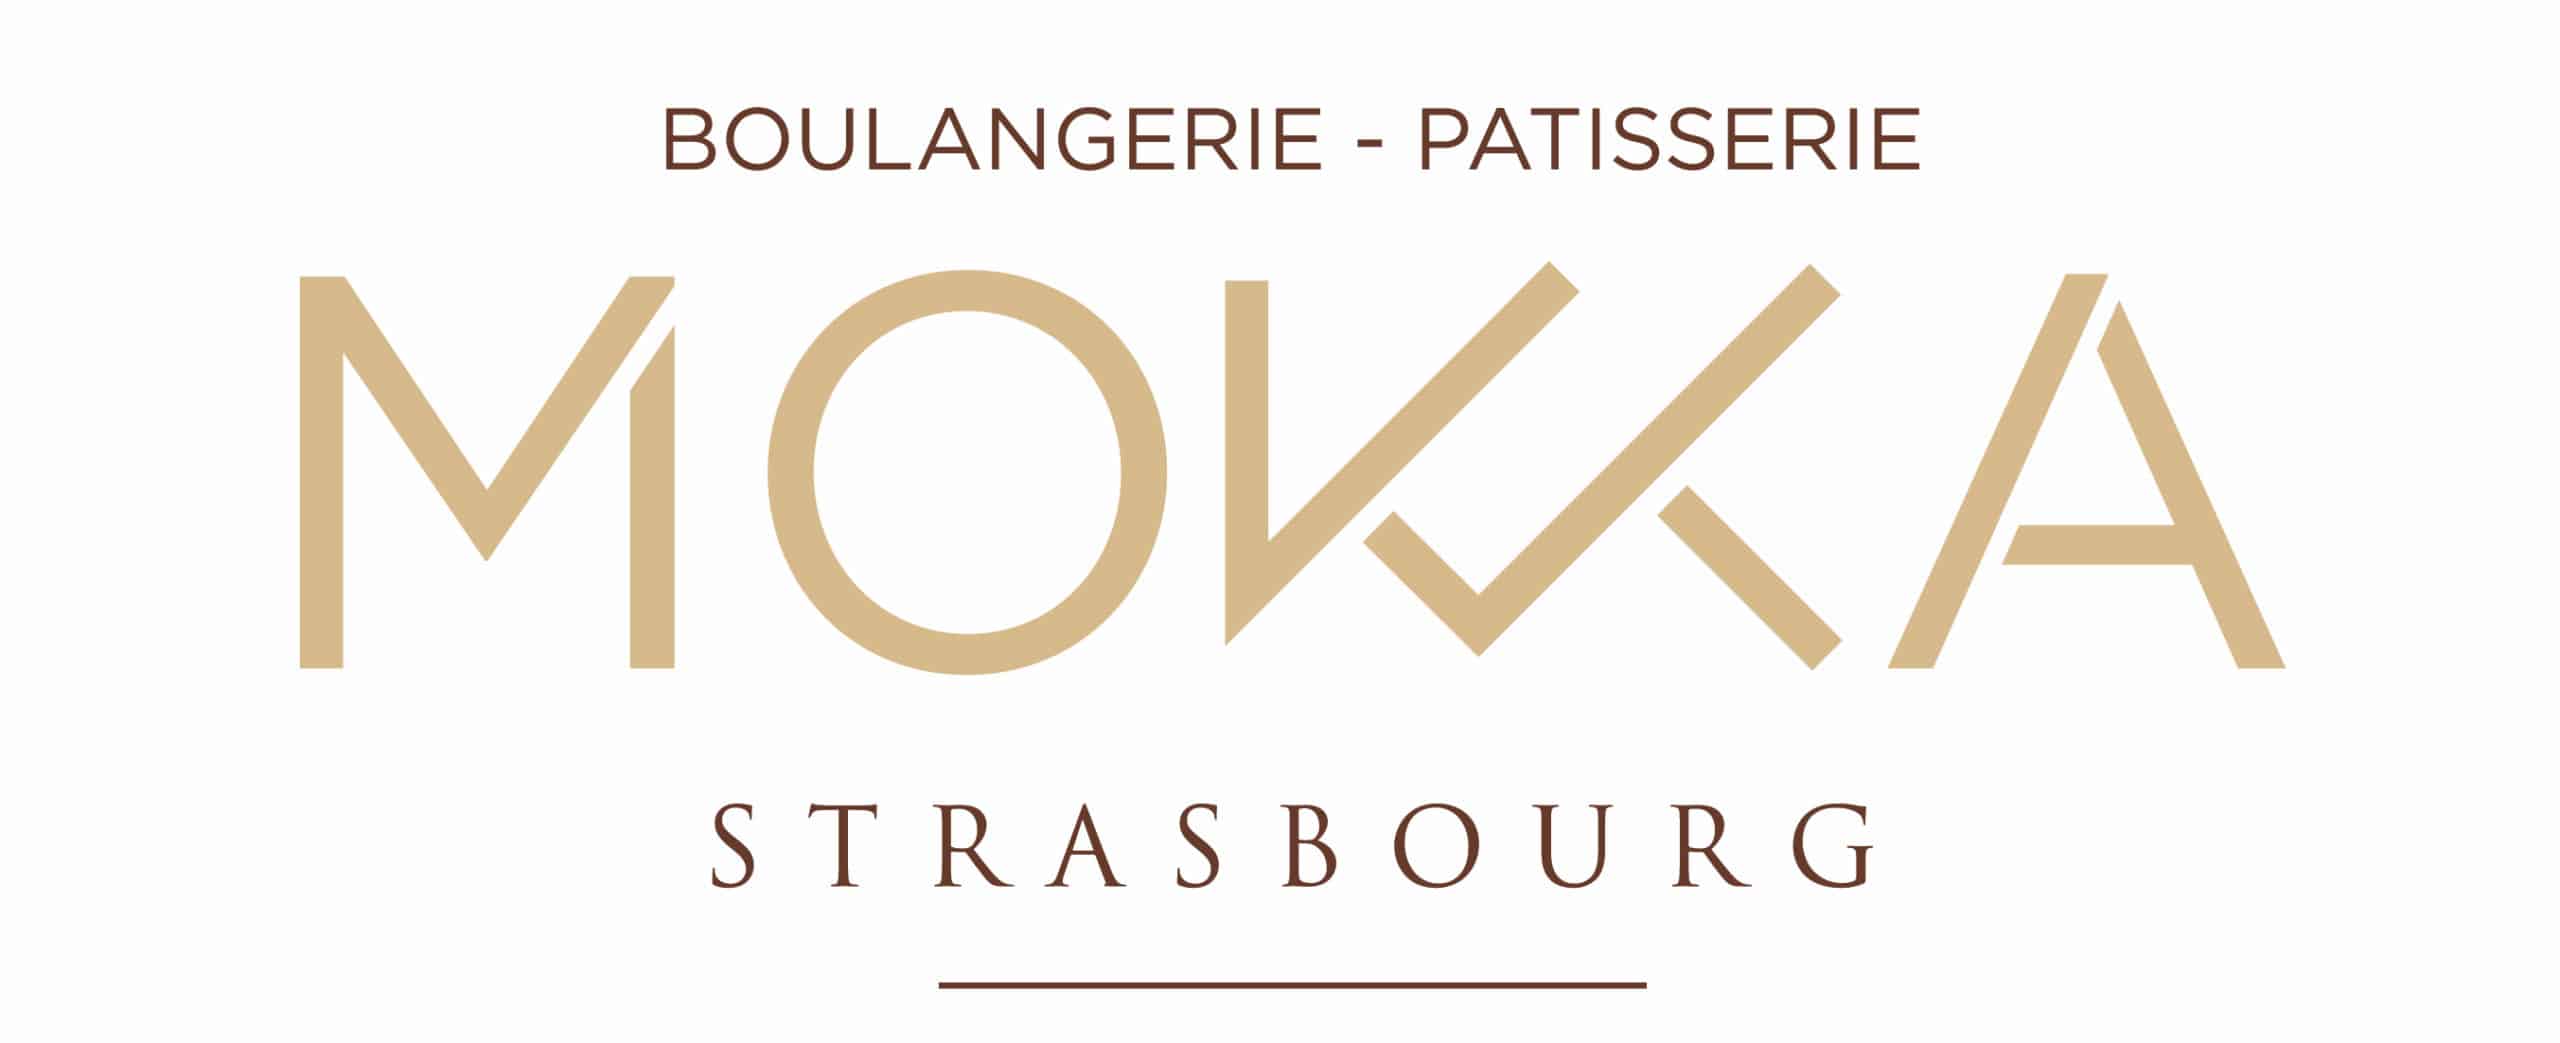 Mokka Estrasburgo - Logotipo